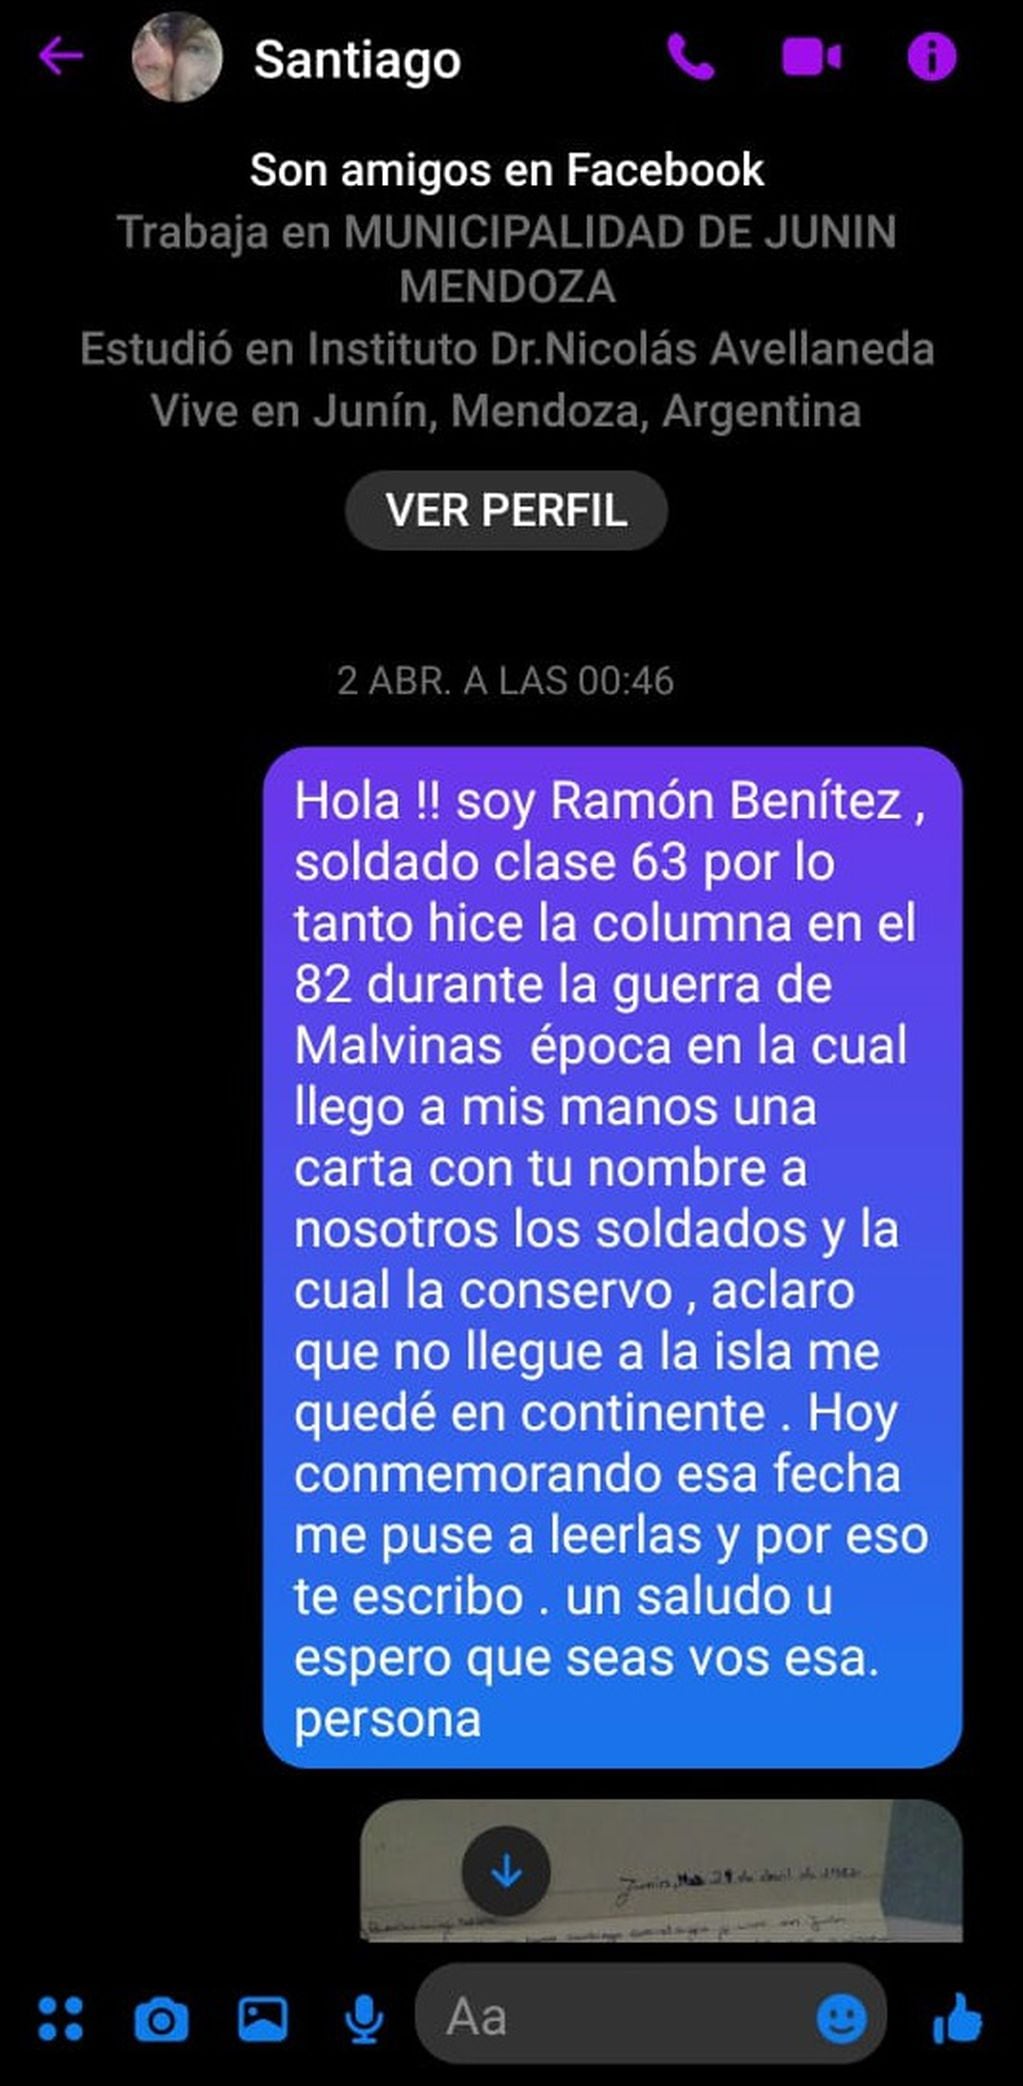 El mensaje de Ramón estuvo más de dos meses esperando en el perfil del Santiago. - 